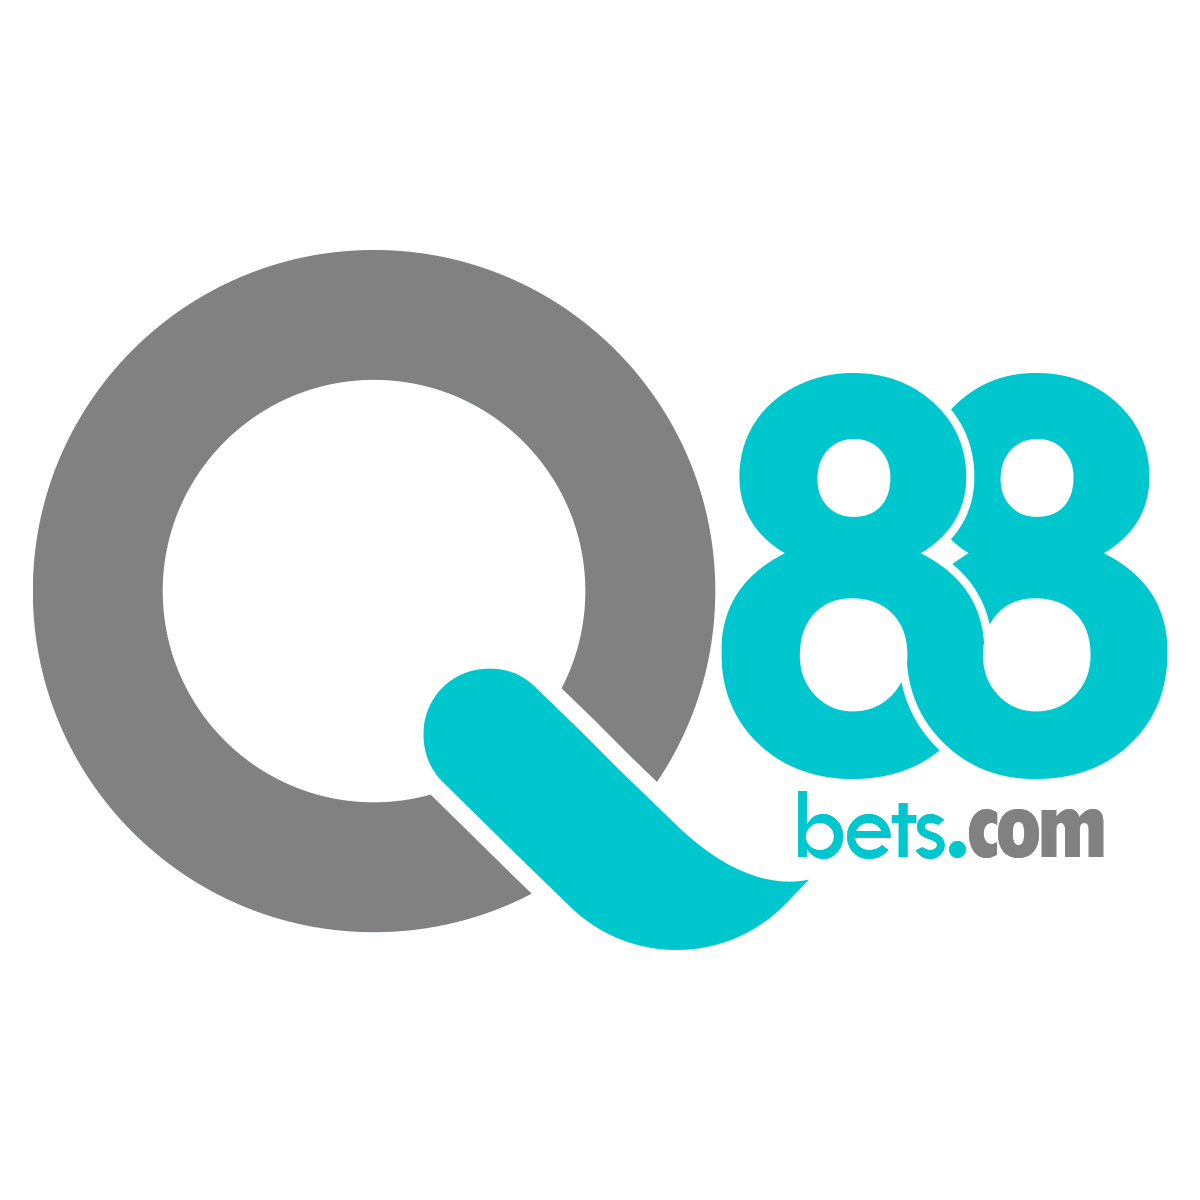 Q88Bets 